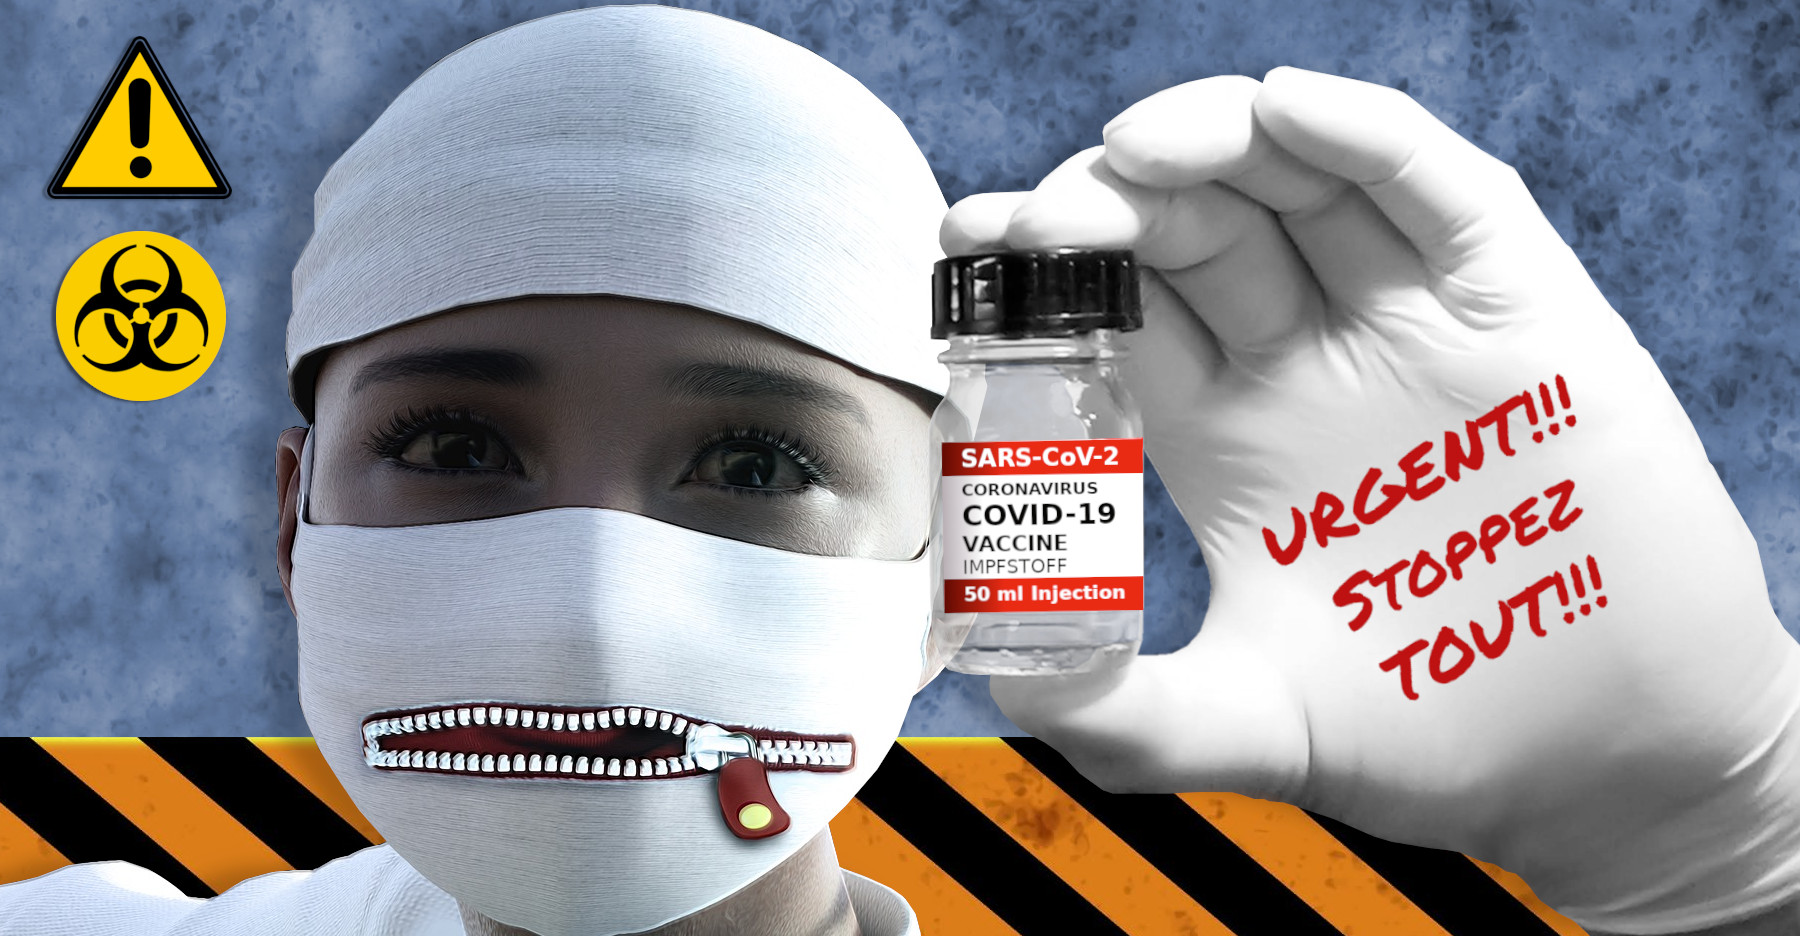 URGENT!!! Stoppez les vaccins!!!